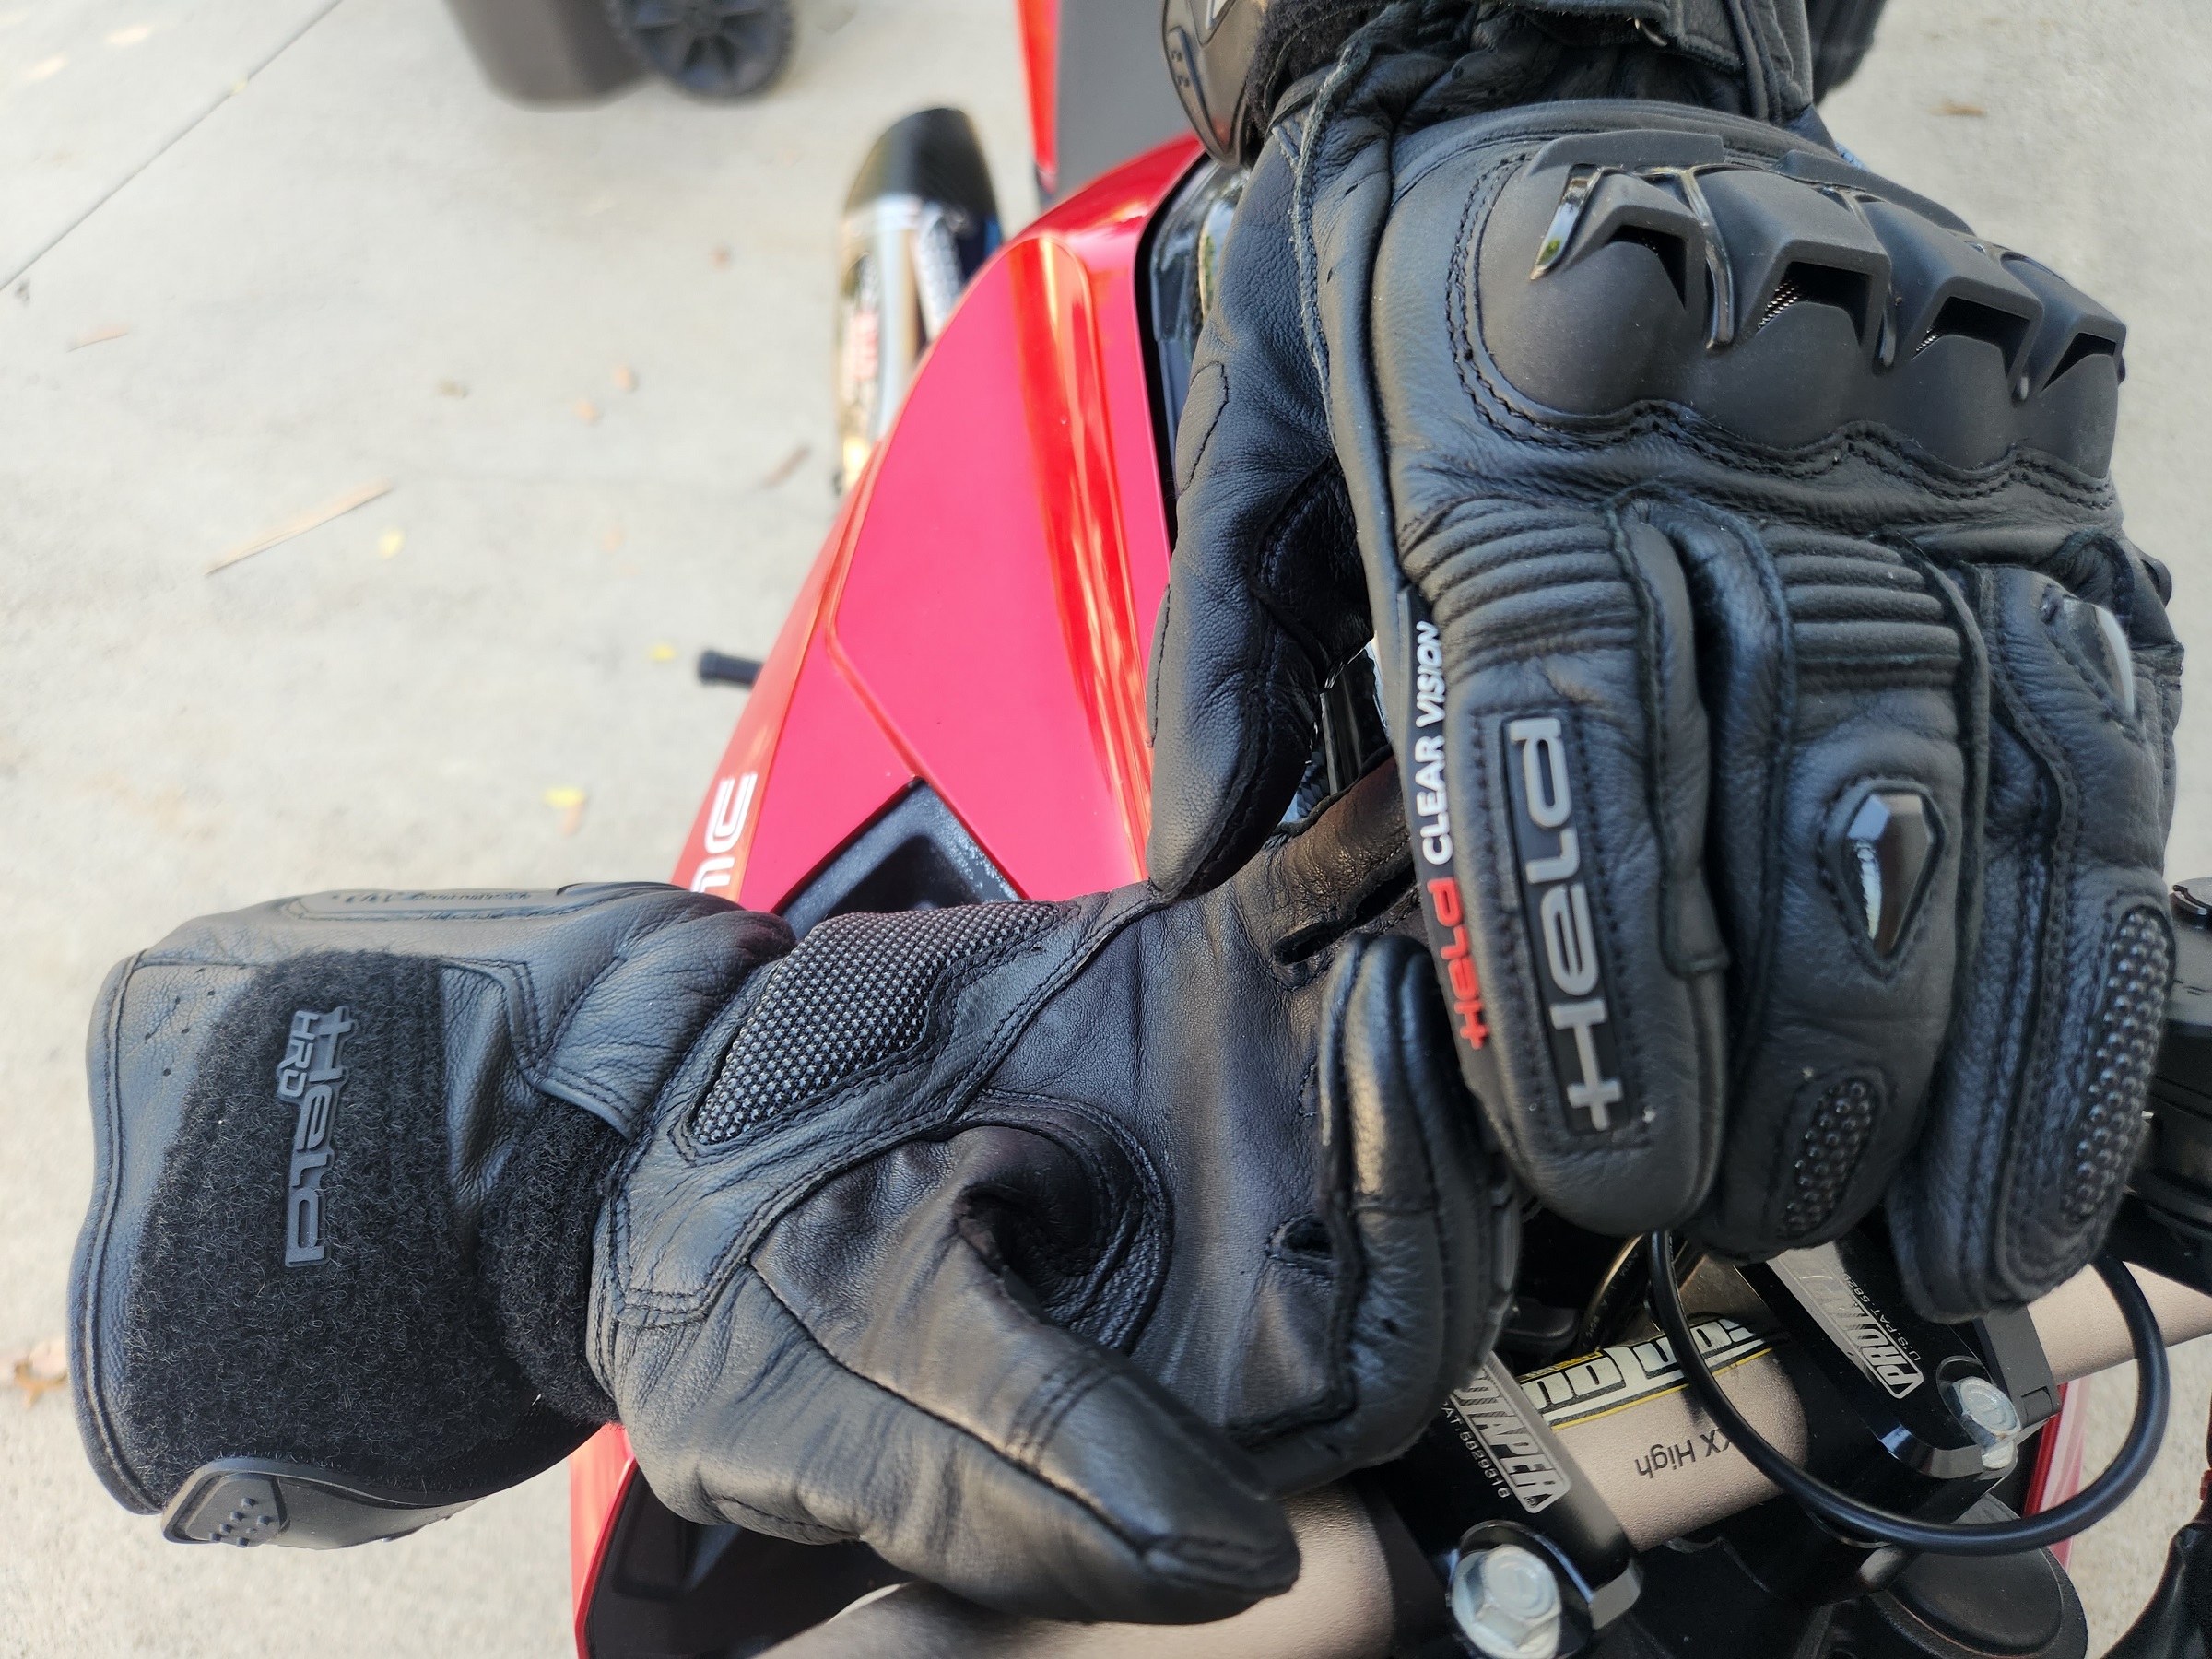 held chikara RR gloves on ducati motorcycle handlebars